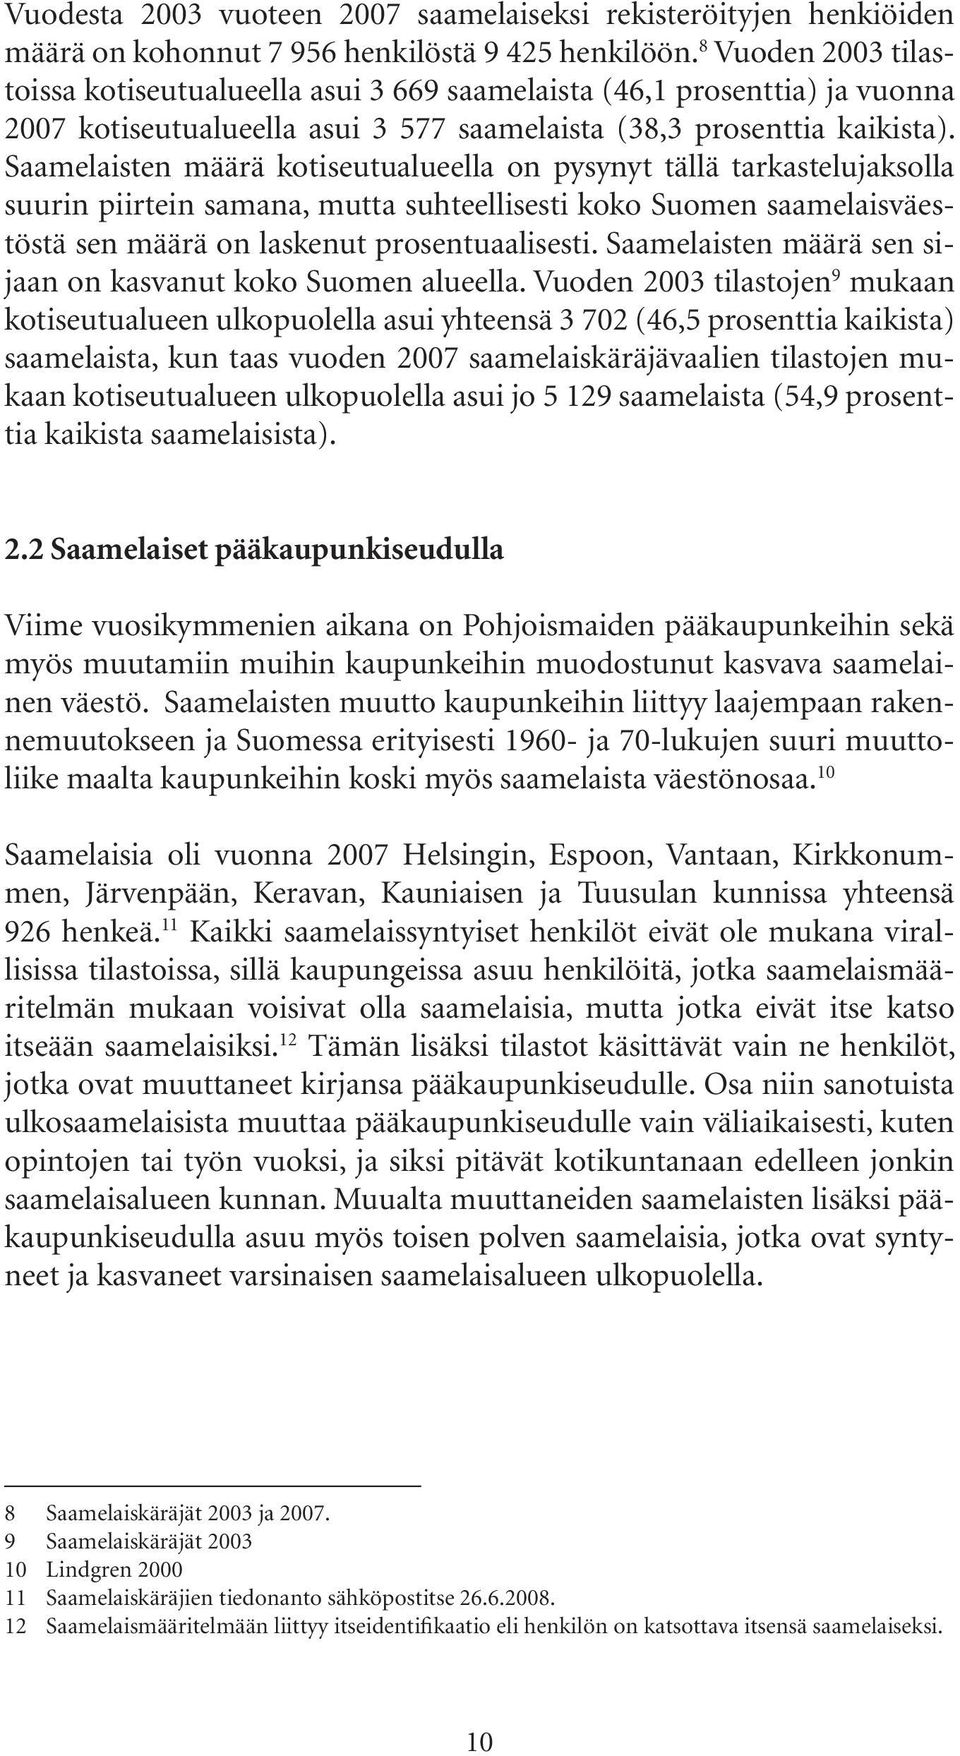 Saamelaisten määrä kotiseutualueella on pysynyt tällä tarkastelujaksolla suurin piirtein samana, mutta suhteellisesti koko Suomen saamelaisväestöstä sen määrä on laskenut prosentuaalisesti.